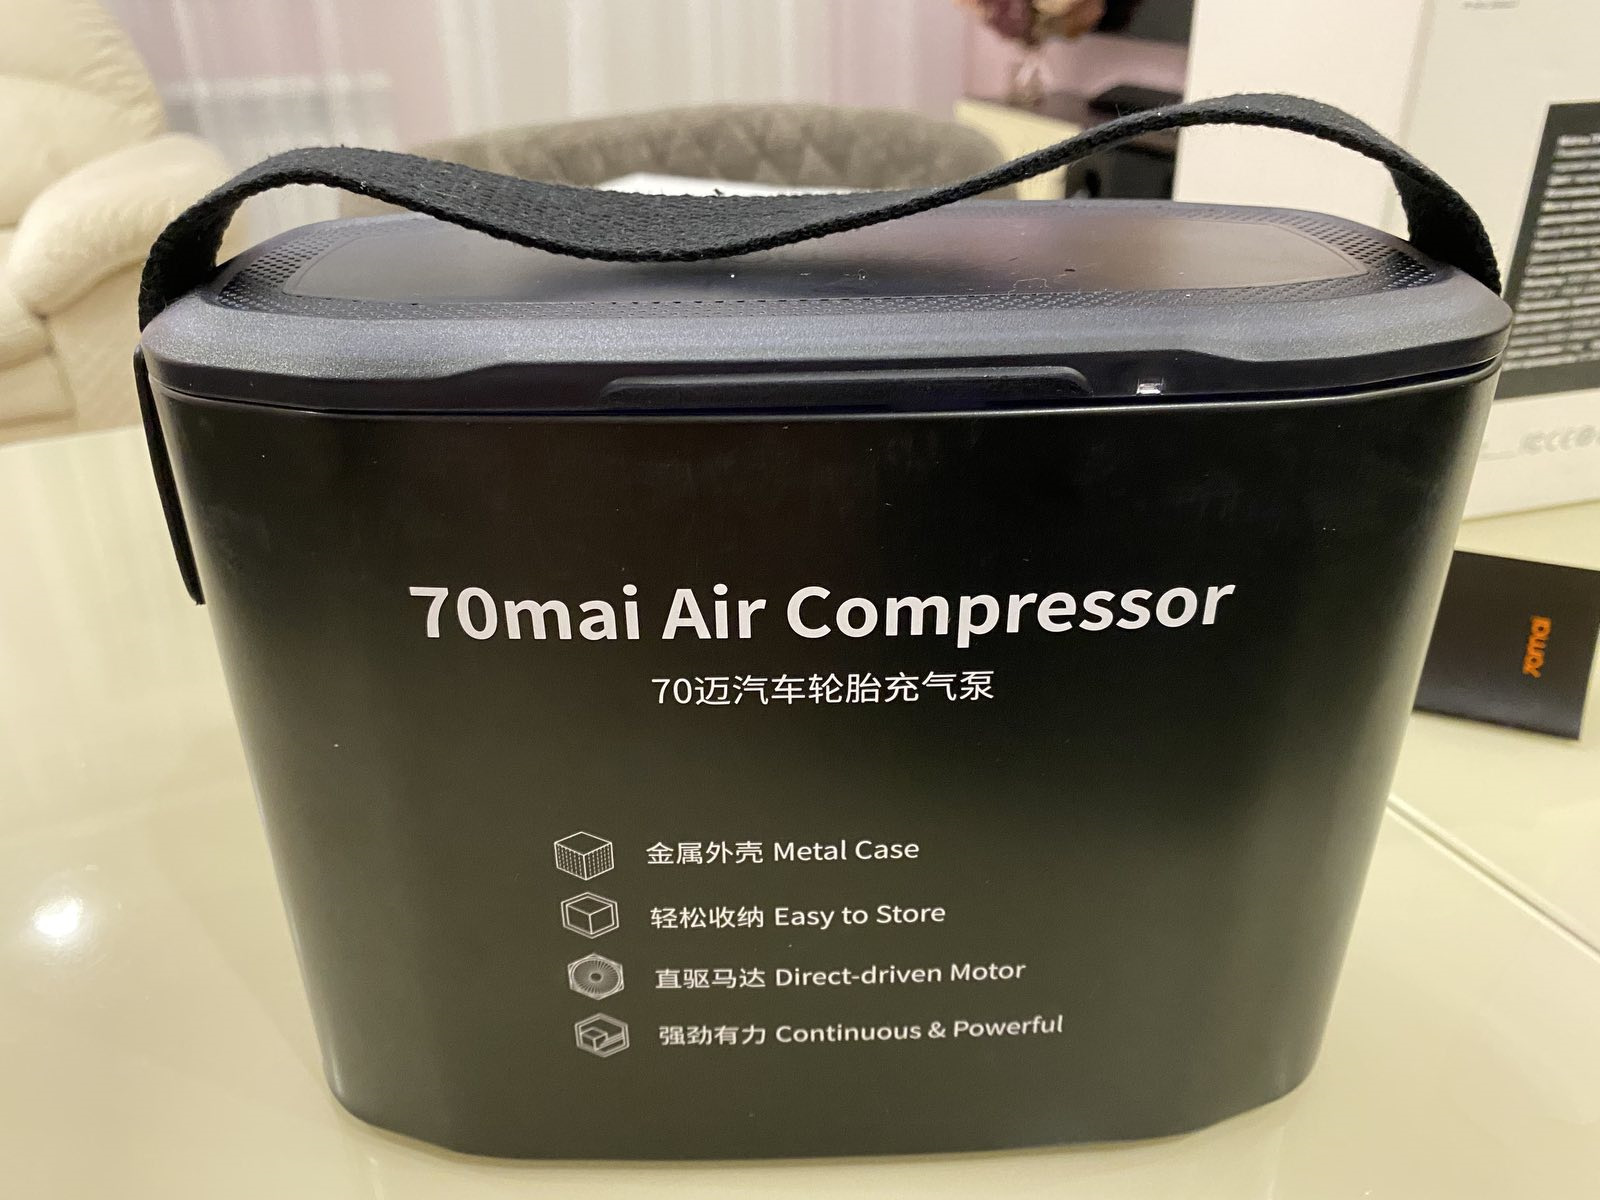 Компрессор 70mai air compressor lite. 70mai компрессор автомобильный. Компрессор 70mai Air. Автомобильный компрессор 70mai Air Compressor. Компрессор Xiaomi 70mai.